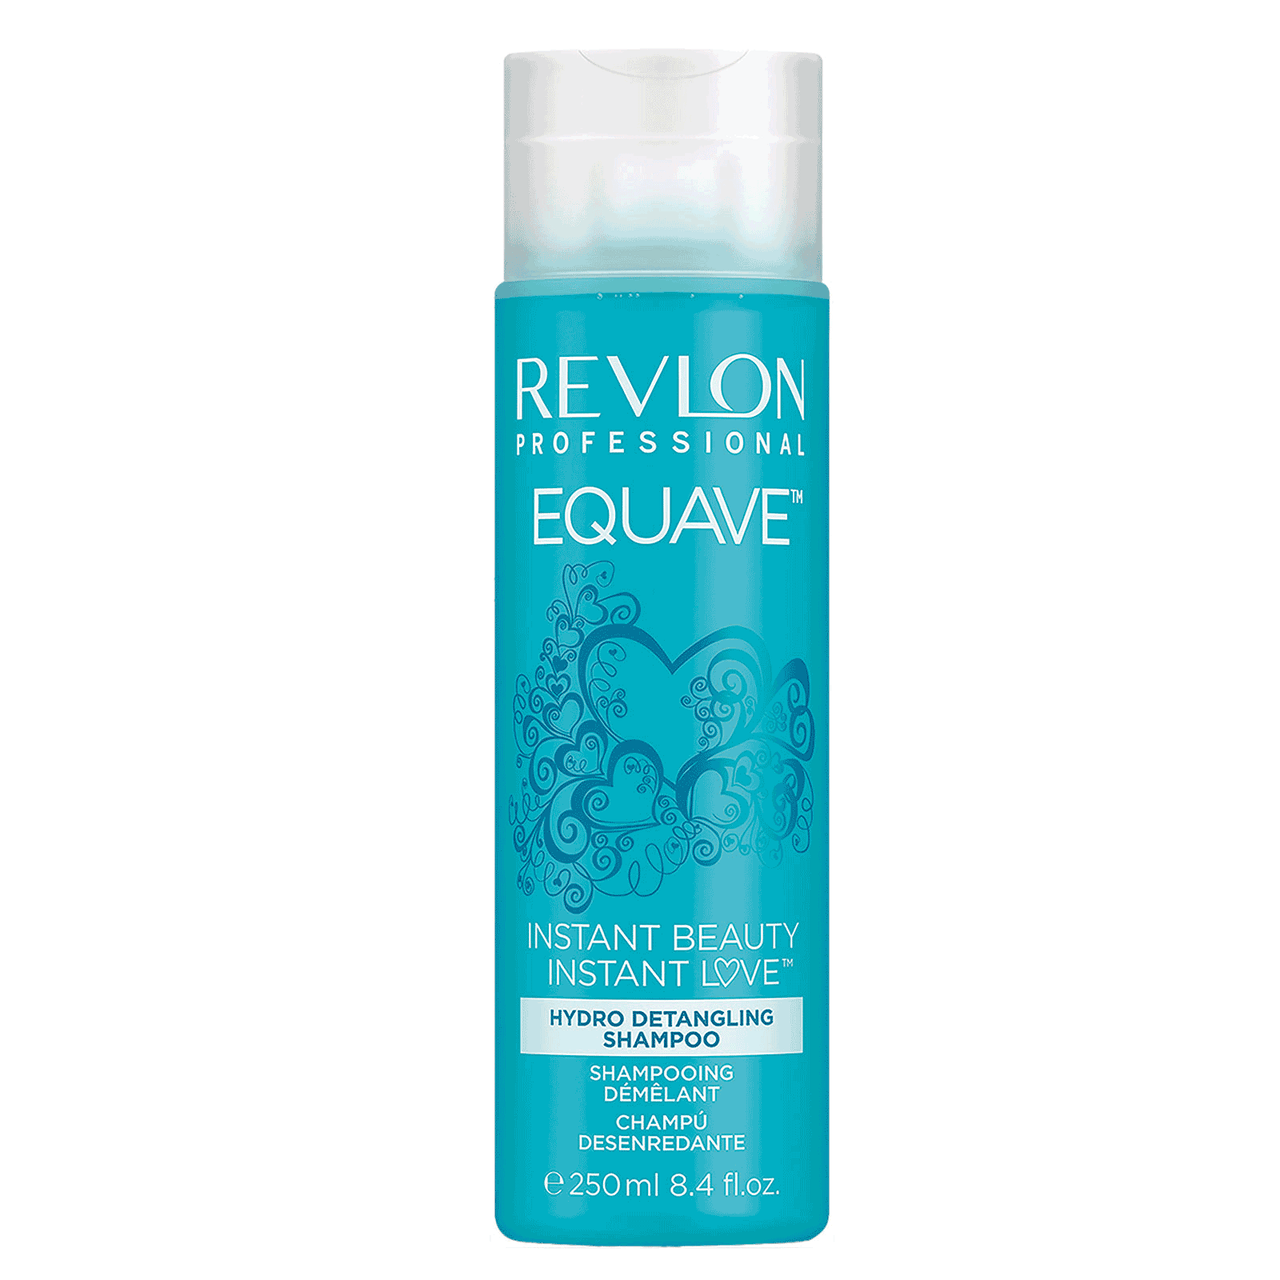 Revlon Professional Equave Hydro Detangling Shampoo 8.4 fl. oz.